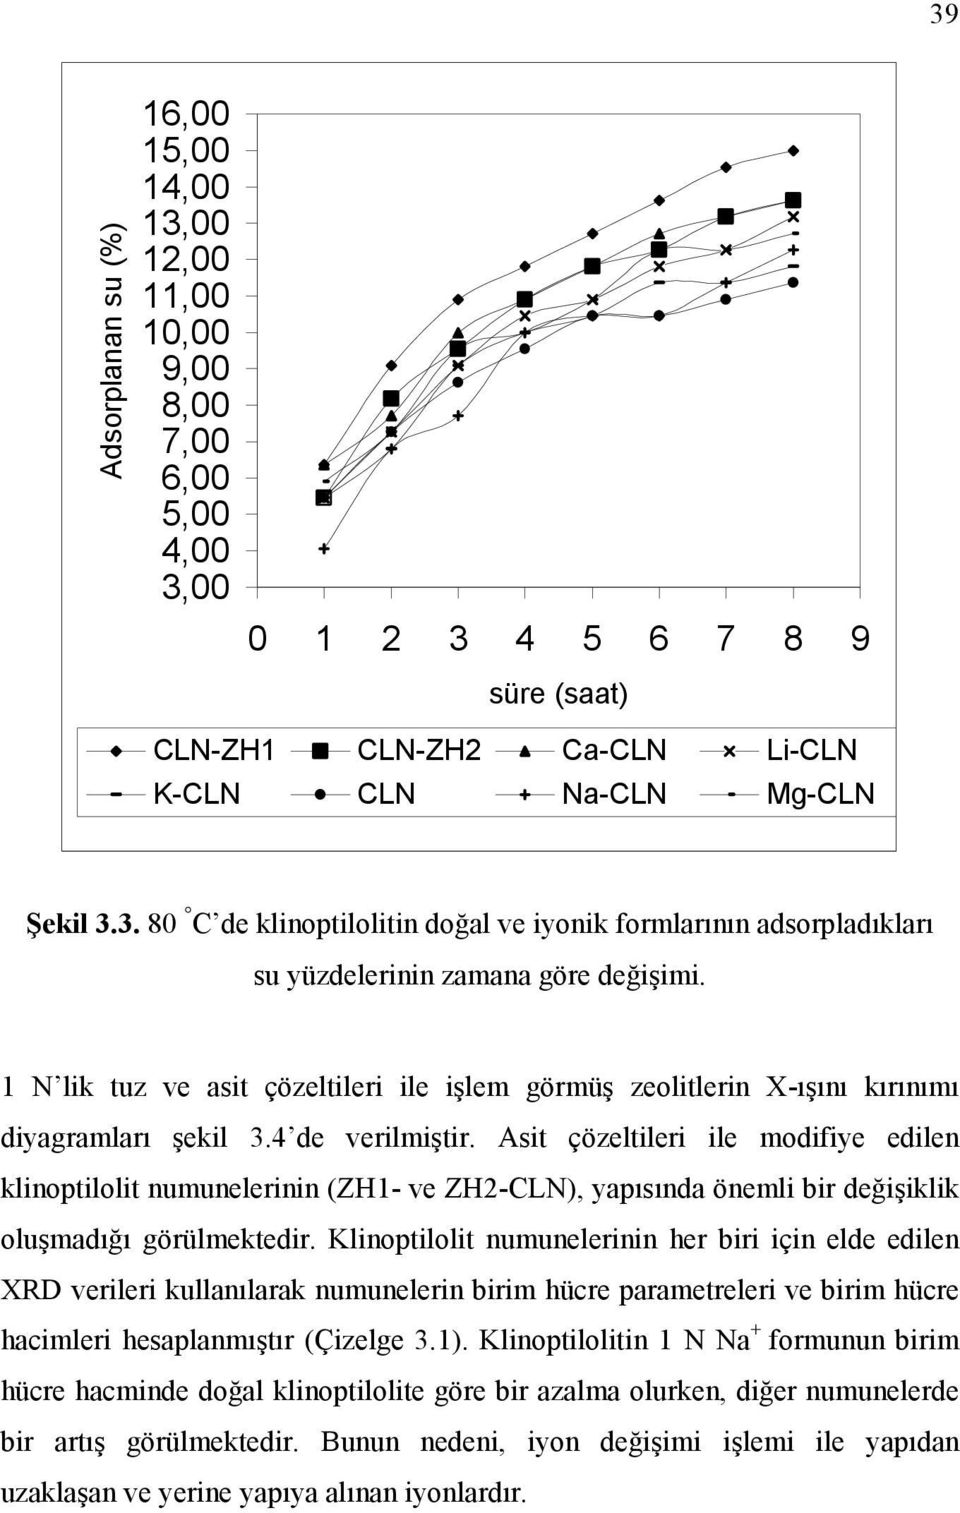 Asit çözeltileri ile modifiye edilen klinoptilolit numunelerinin (ZH1- ve ZH2-CLN), yapısında önemli bir değişiklik oluşmadığı görülmektedir.